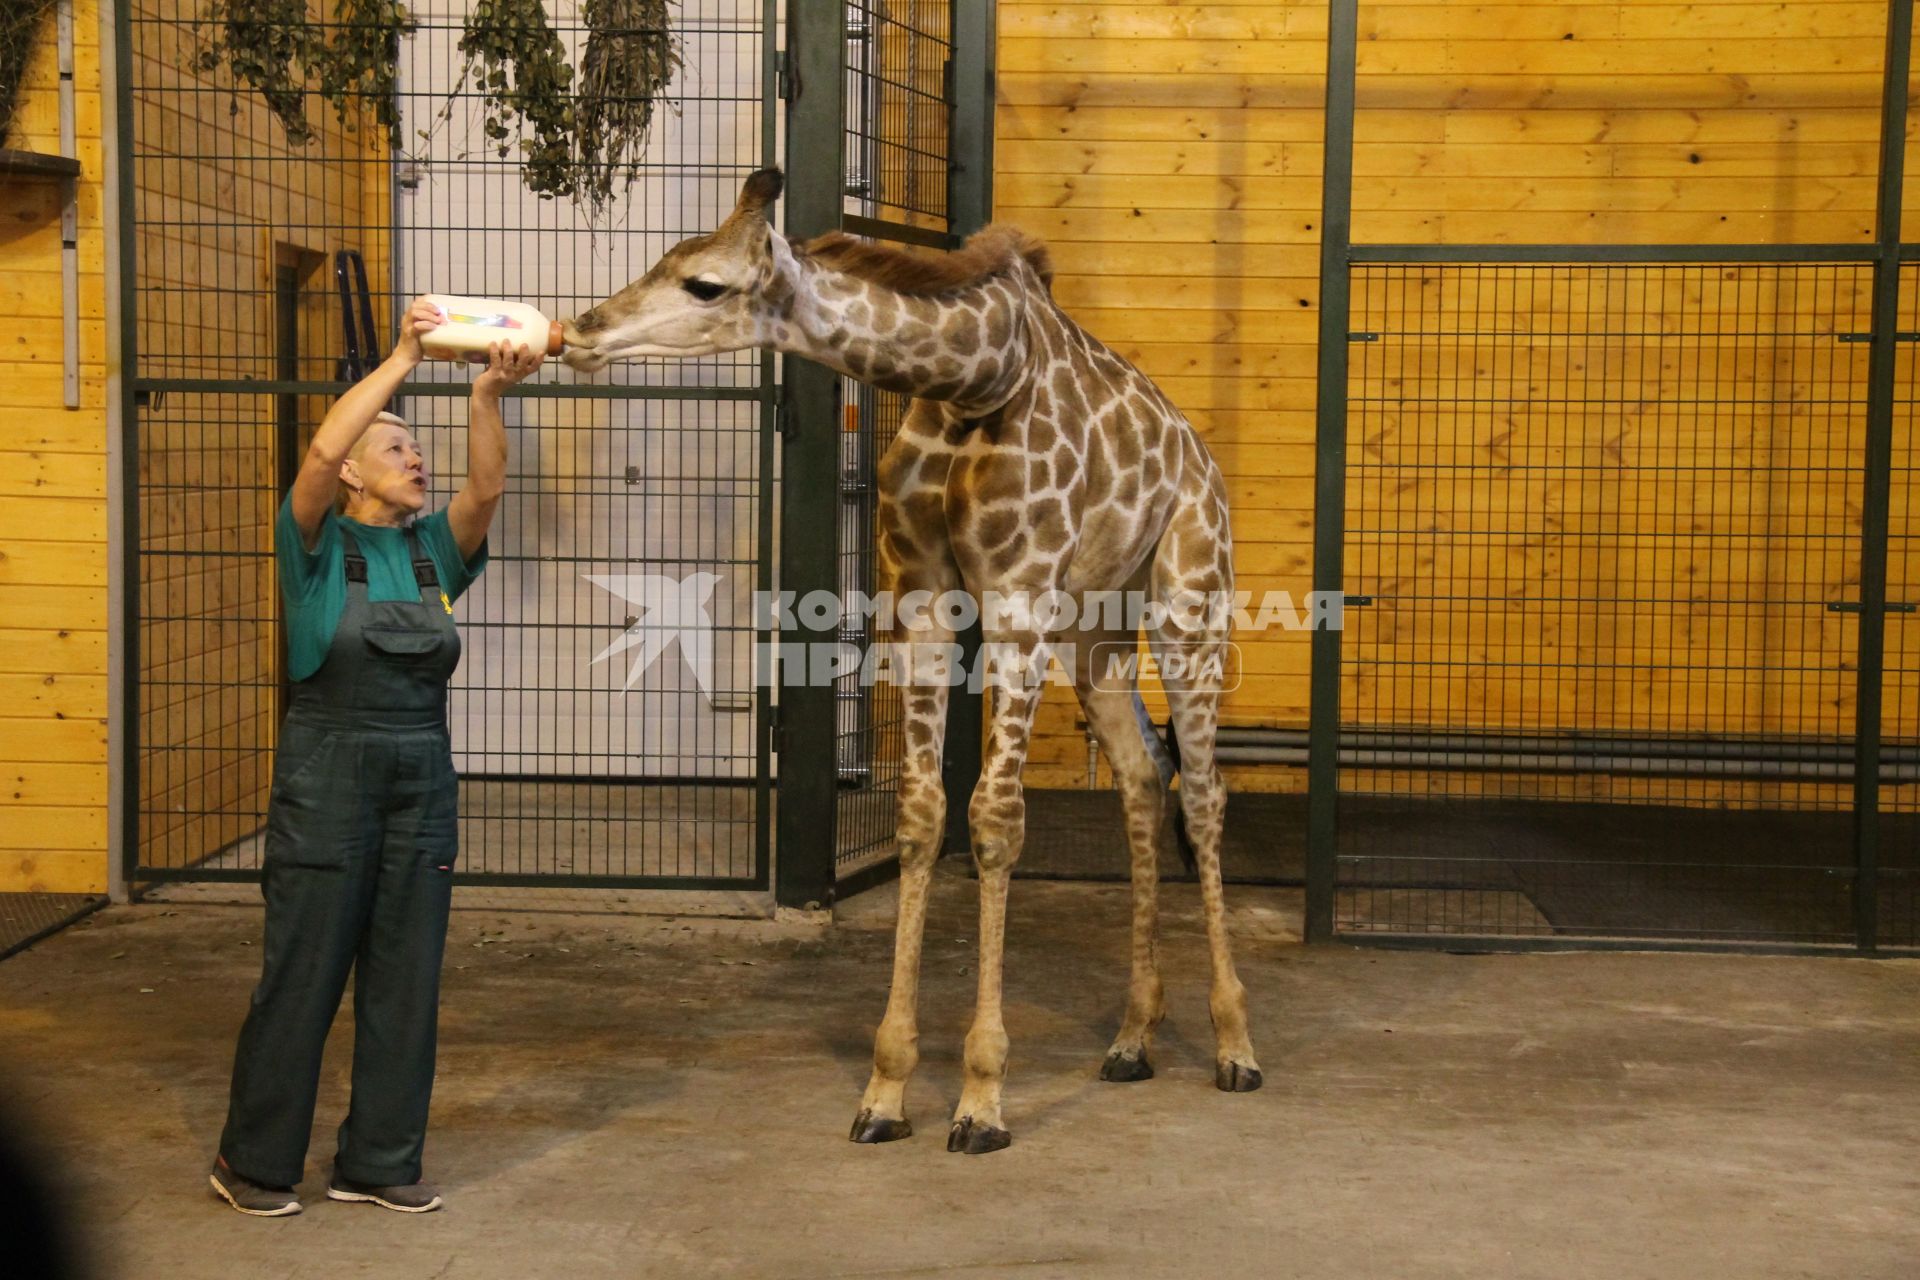 Нижний Новгород. В зоопарке `Лимпопо` отметили первый день рождения жирафика Радуги. Сотрудница зоопарка кормит Радугу из бутылочки с нарисованной цифрой `1`.